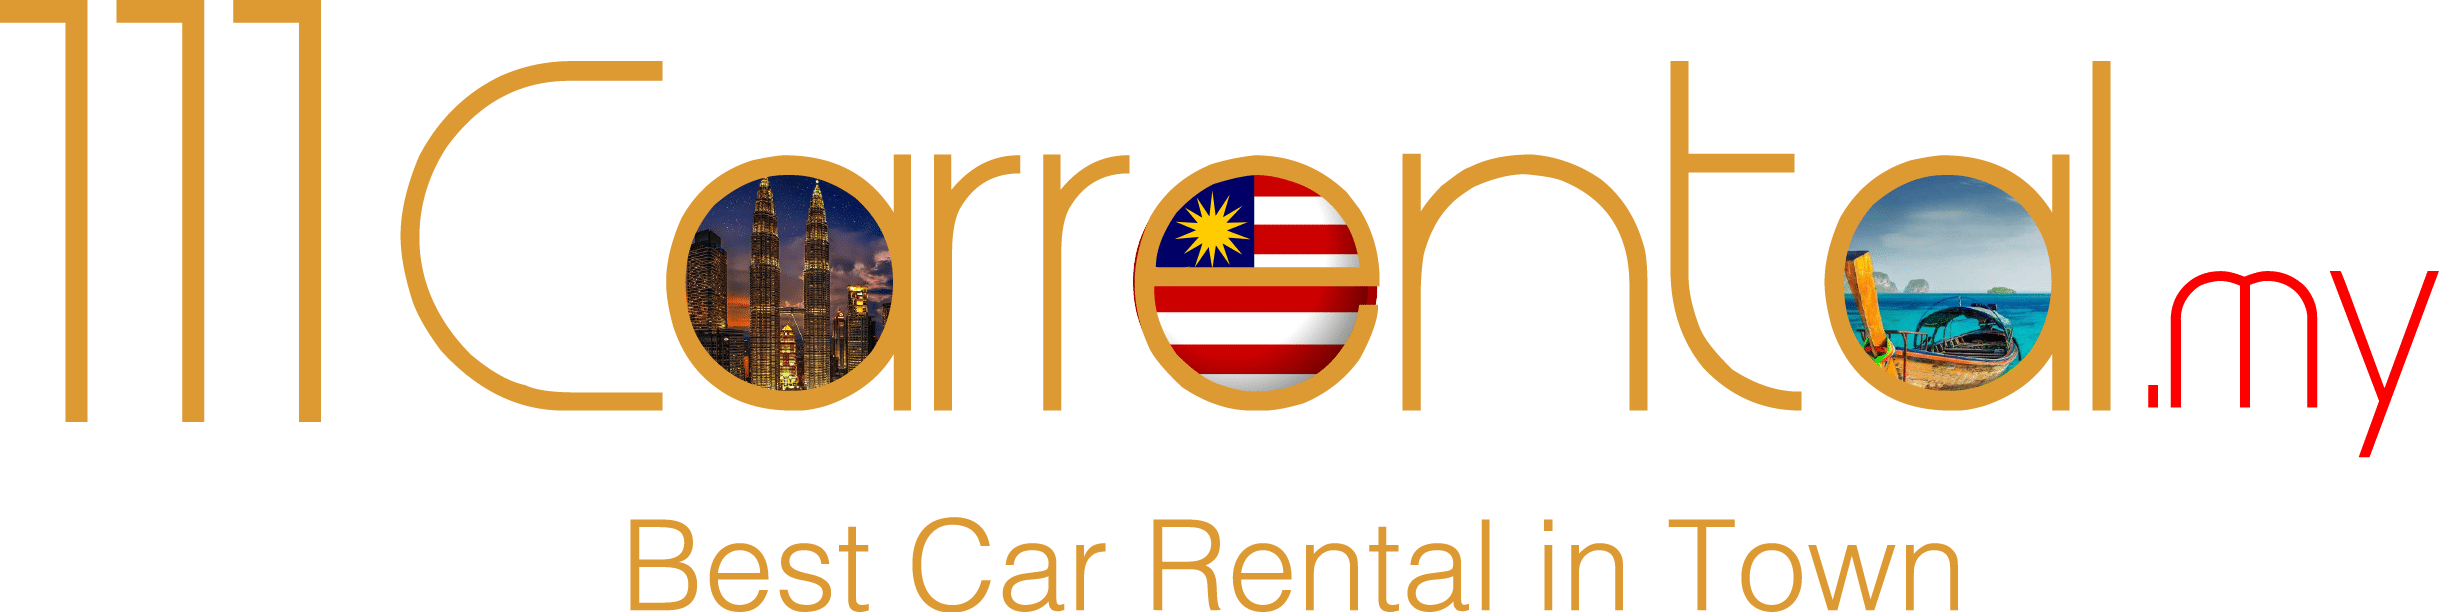 111 Car Rental | Partner register - 111 Car Rental